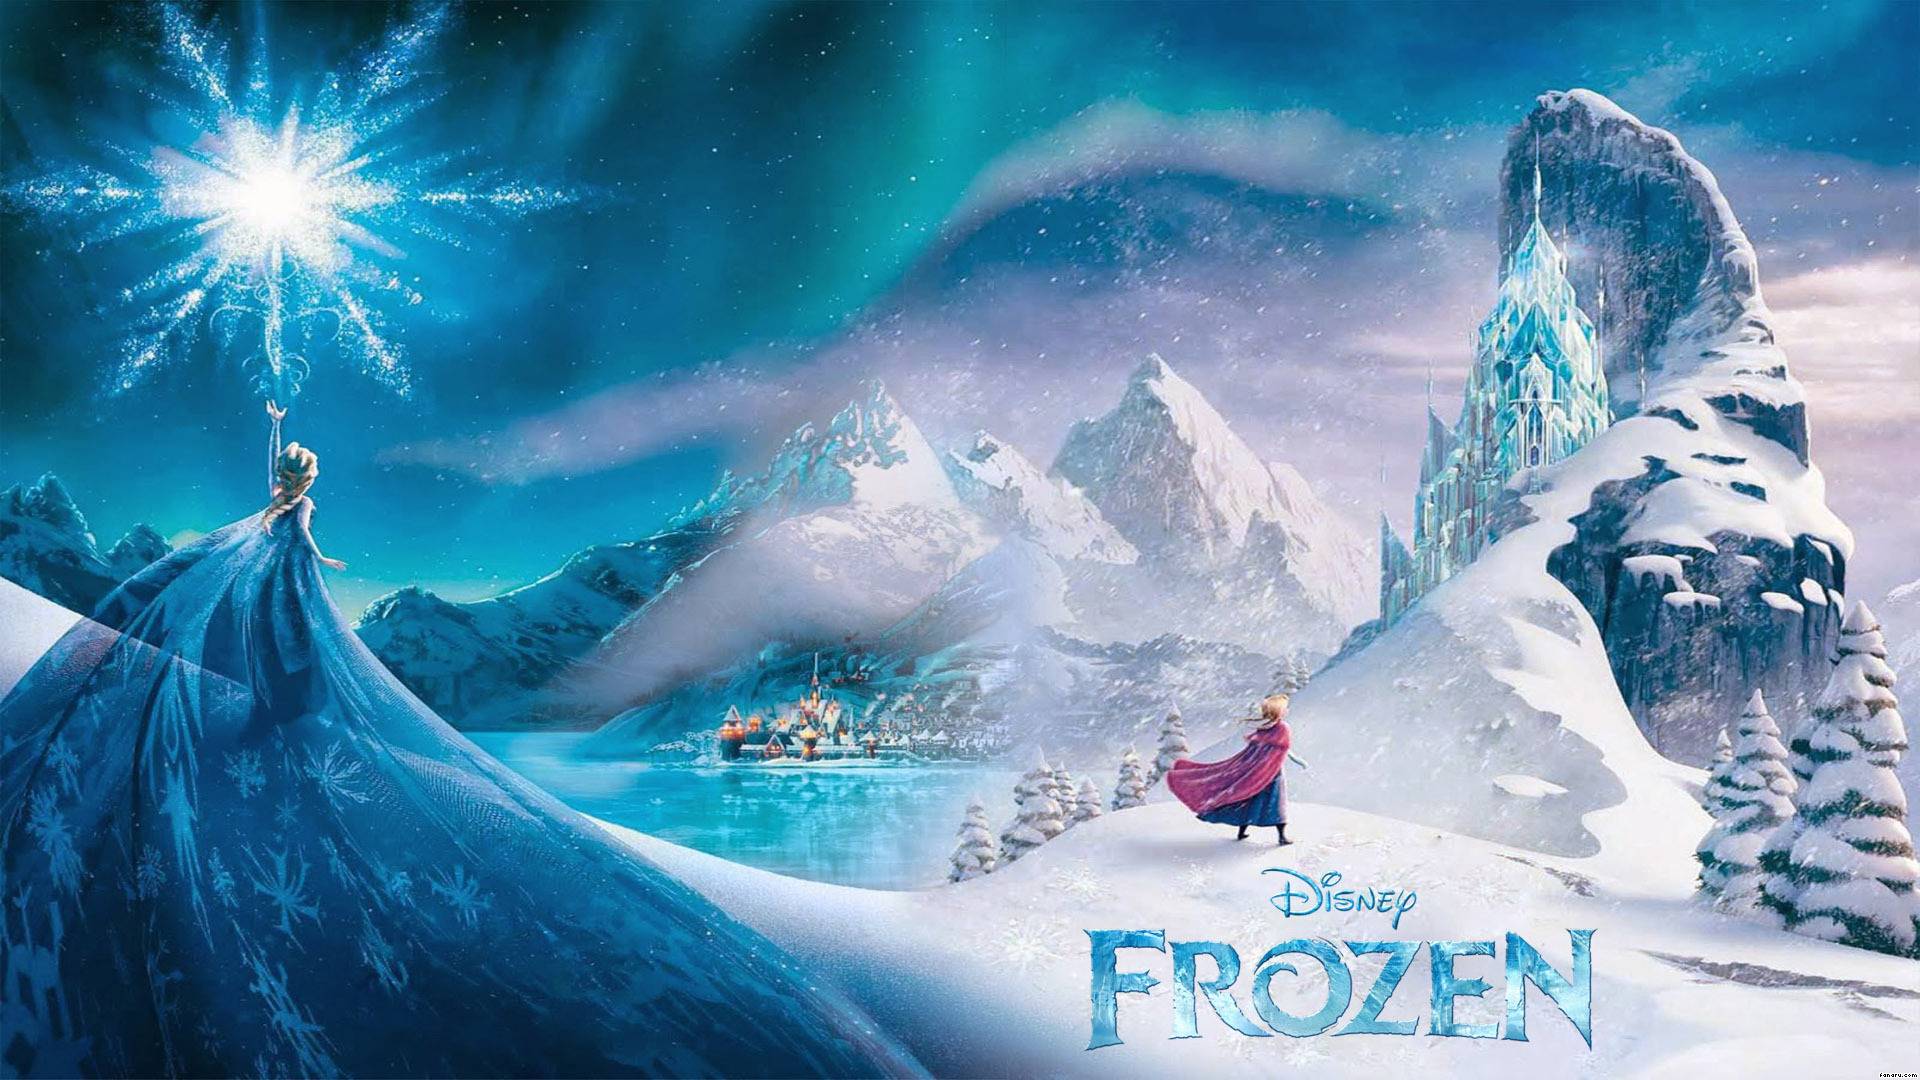 Wallpaper iPhone 5 Disney Frozen Wallpaper